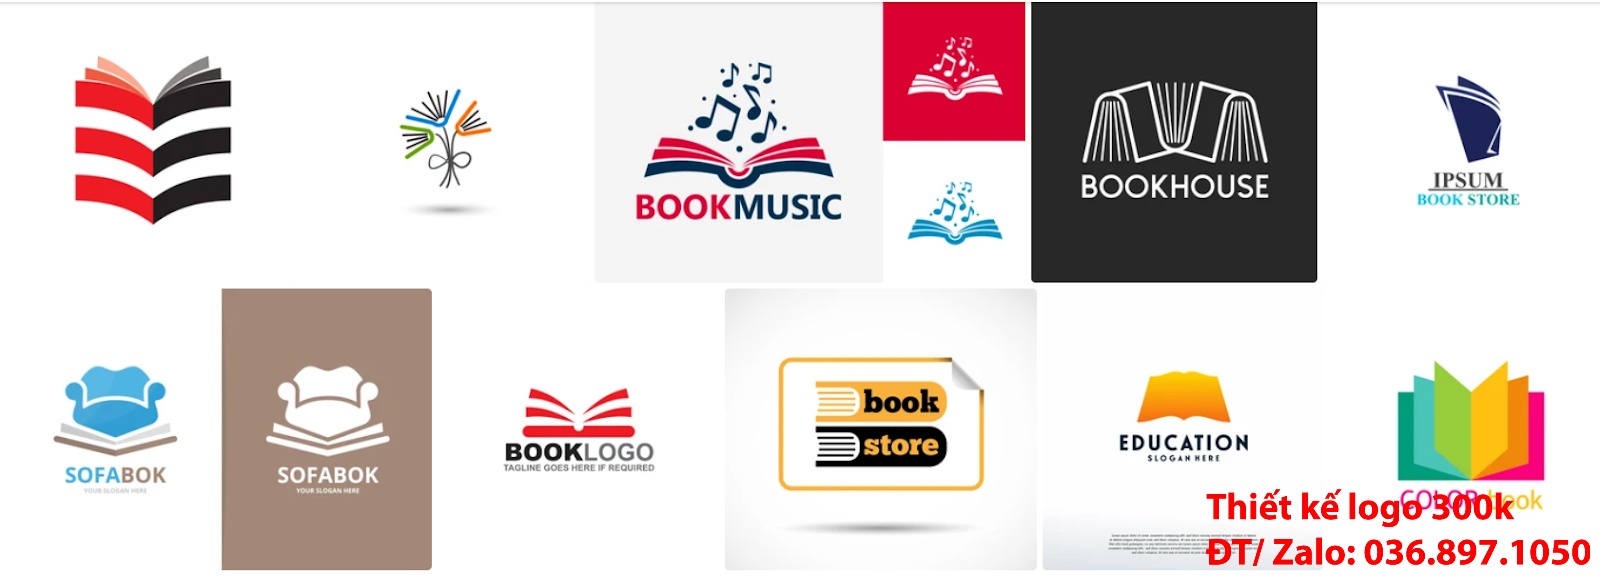 Mẫu logo nhà sách đẹp miễn phí chất lượng cao, uy tín và chuyên nghiệp